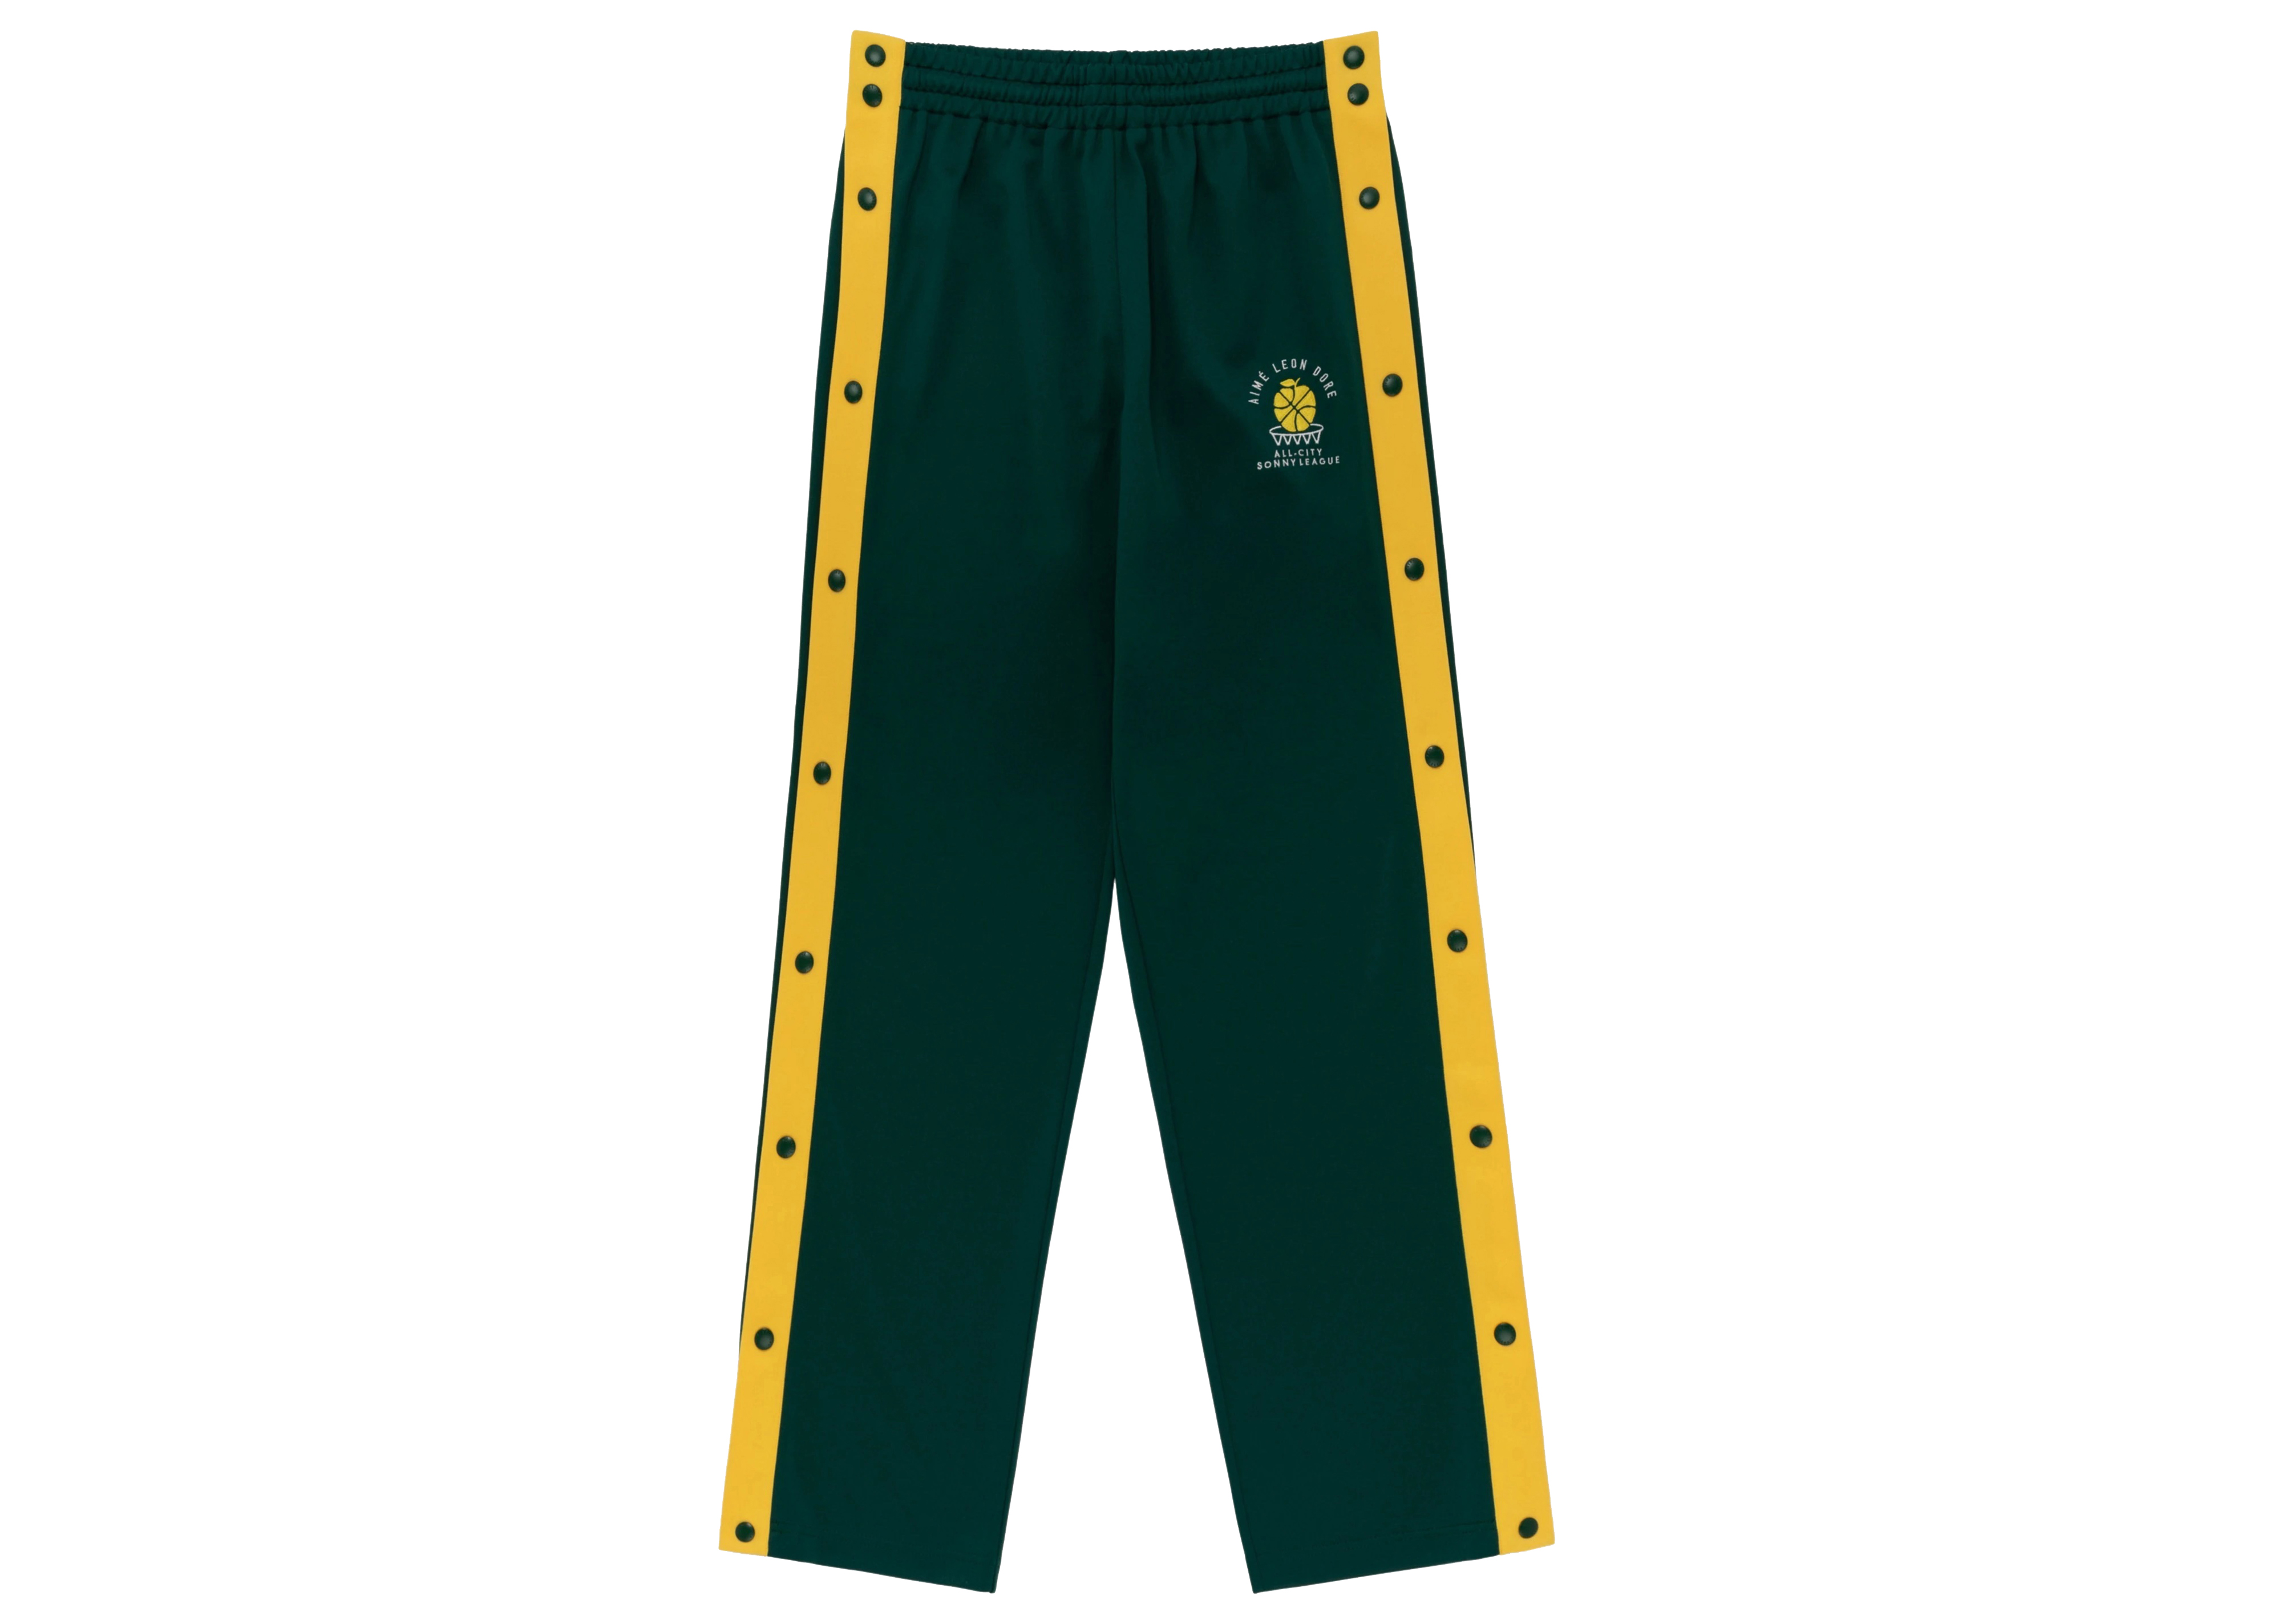 Aime Leon Dore x New Balance SONNY League Warm Up Pant Green Men's ...